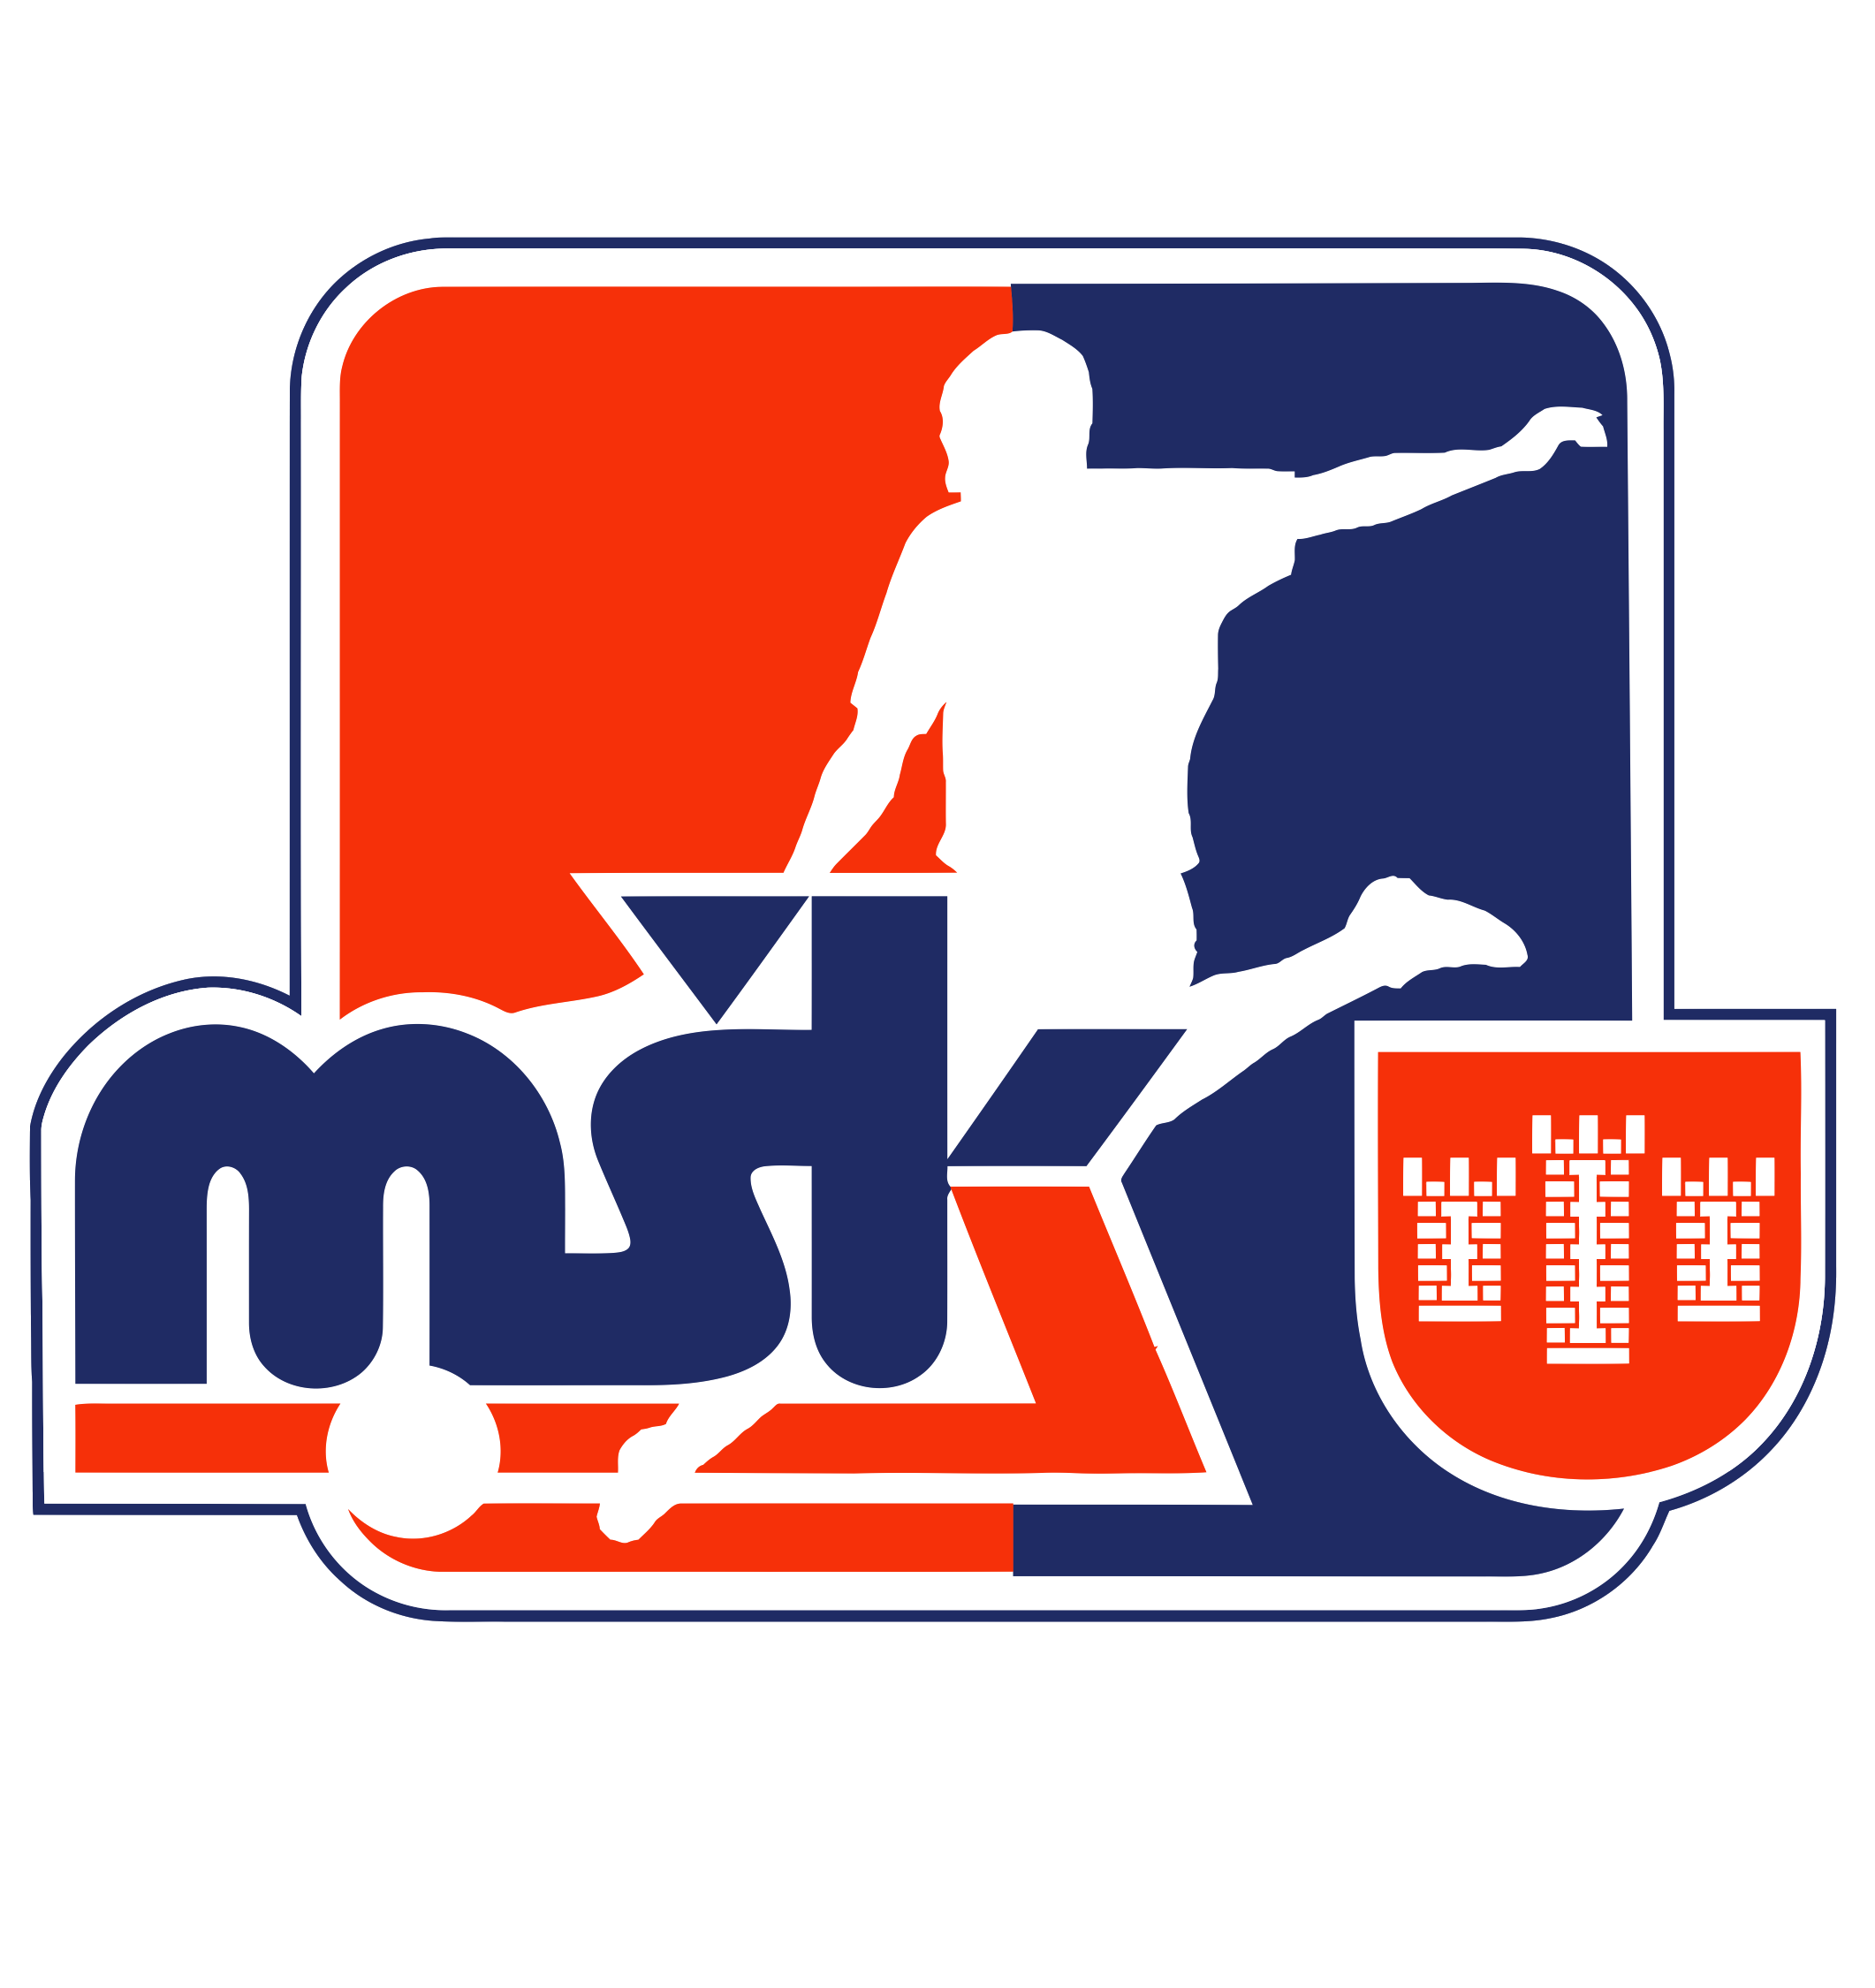 MSK Povazska Bystrica team logo